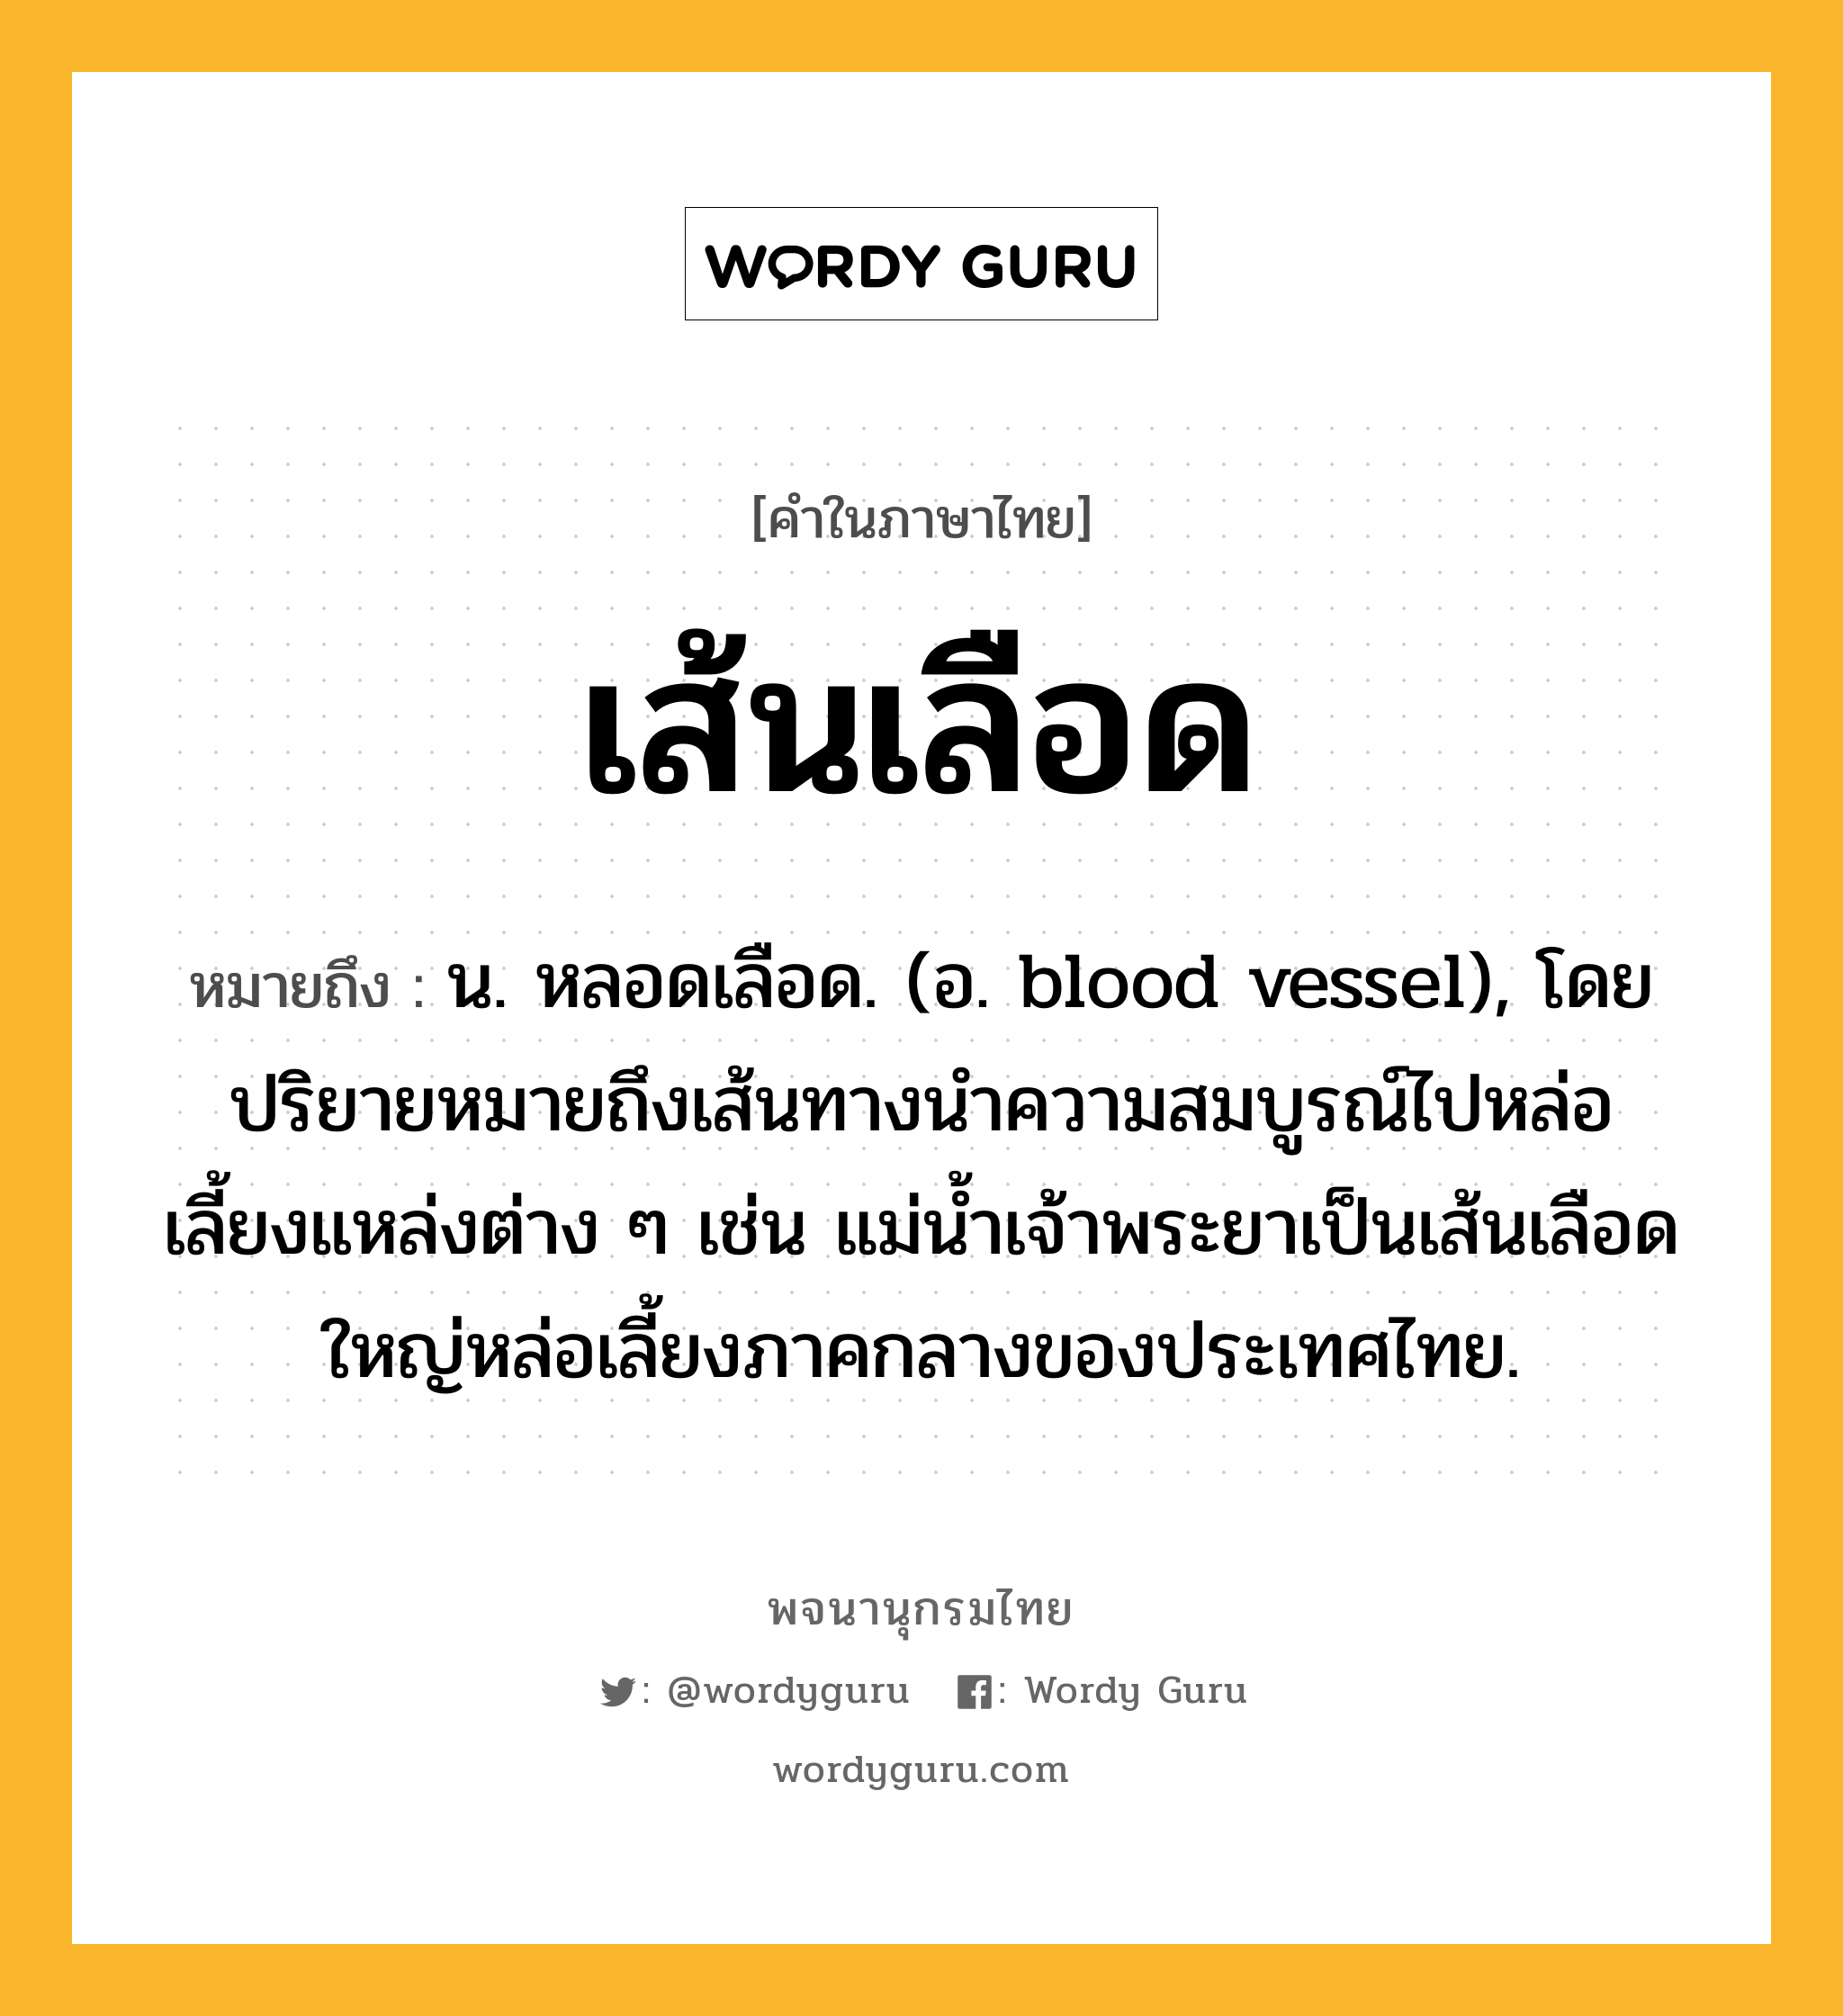 เส้นเลือด หมายถึงอะไร?, คำในภาษาไทย เส้นเลือด หมายถึง น. หลอดเลือด. (อ. blood vessel), โดยปริยายหมายถึงเส้นทางนําความสมบูรณ์ไปหล่อเลี้ยงแหล่งต่าง ๆ เช่น แม่นํ้าเจ้าพระยาเป็นเส้นเลือดใหญ่หล่อเลี้ยงภาคกลางของประเทศไทย.